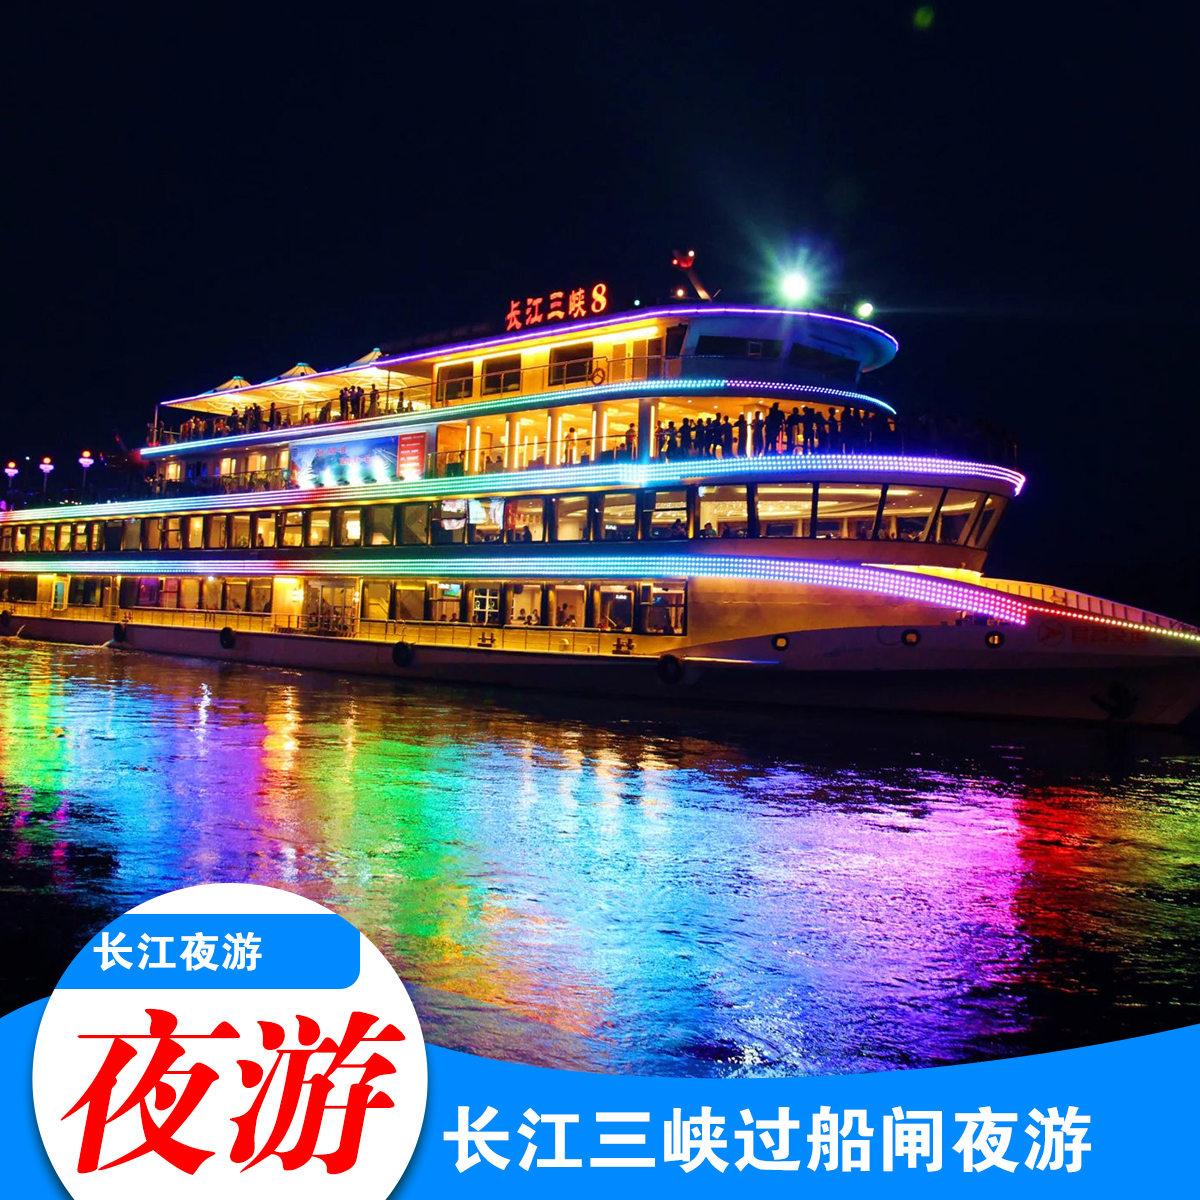 宜昌旅游长江三峡豪华游船长江夜游船过葛洲坝西陵峡品质游